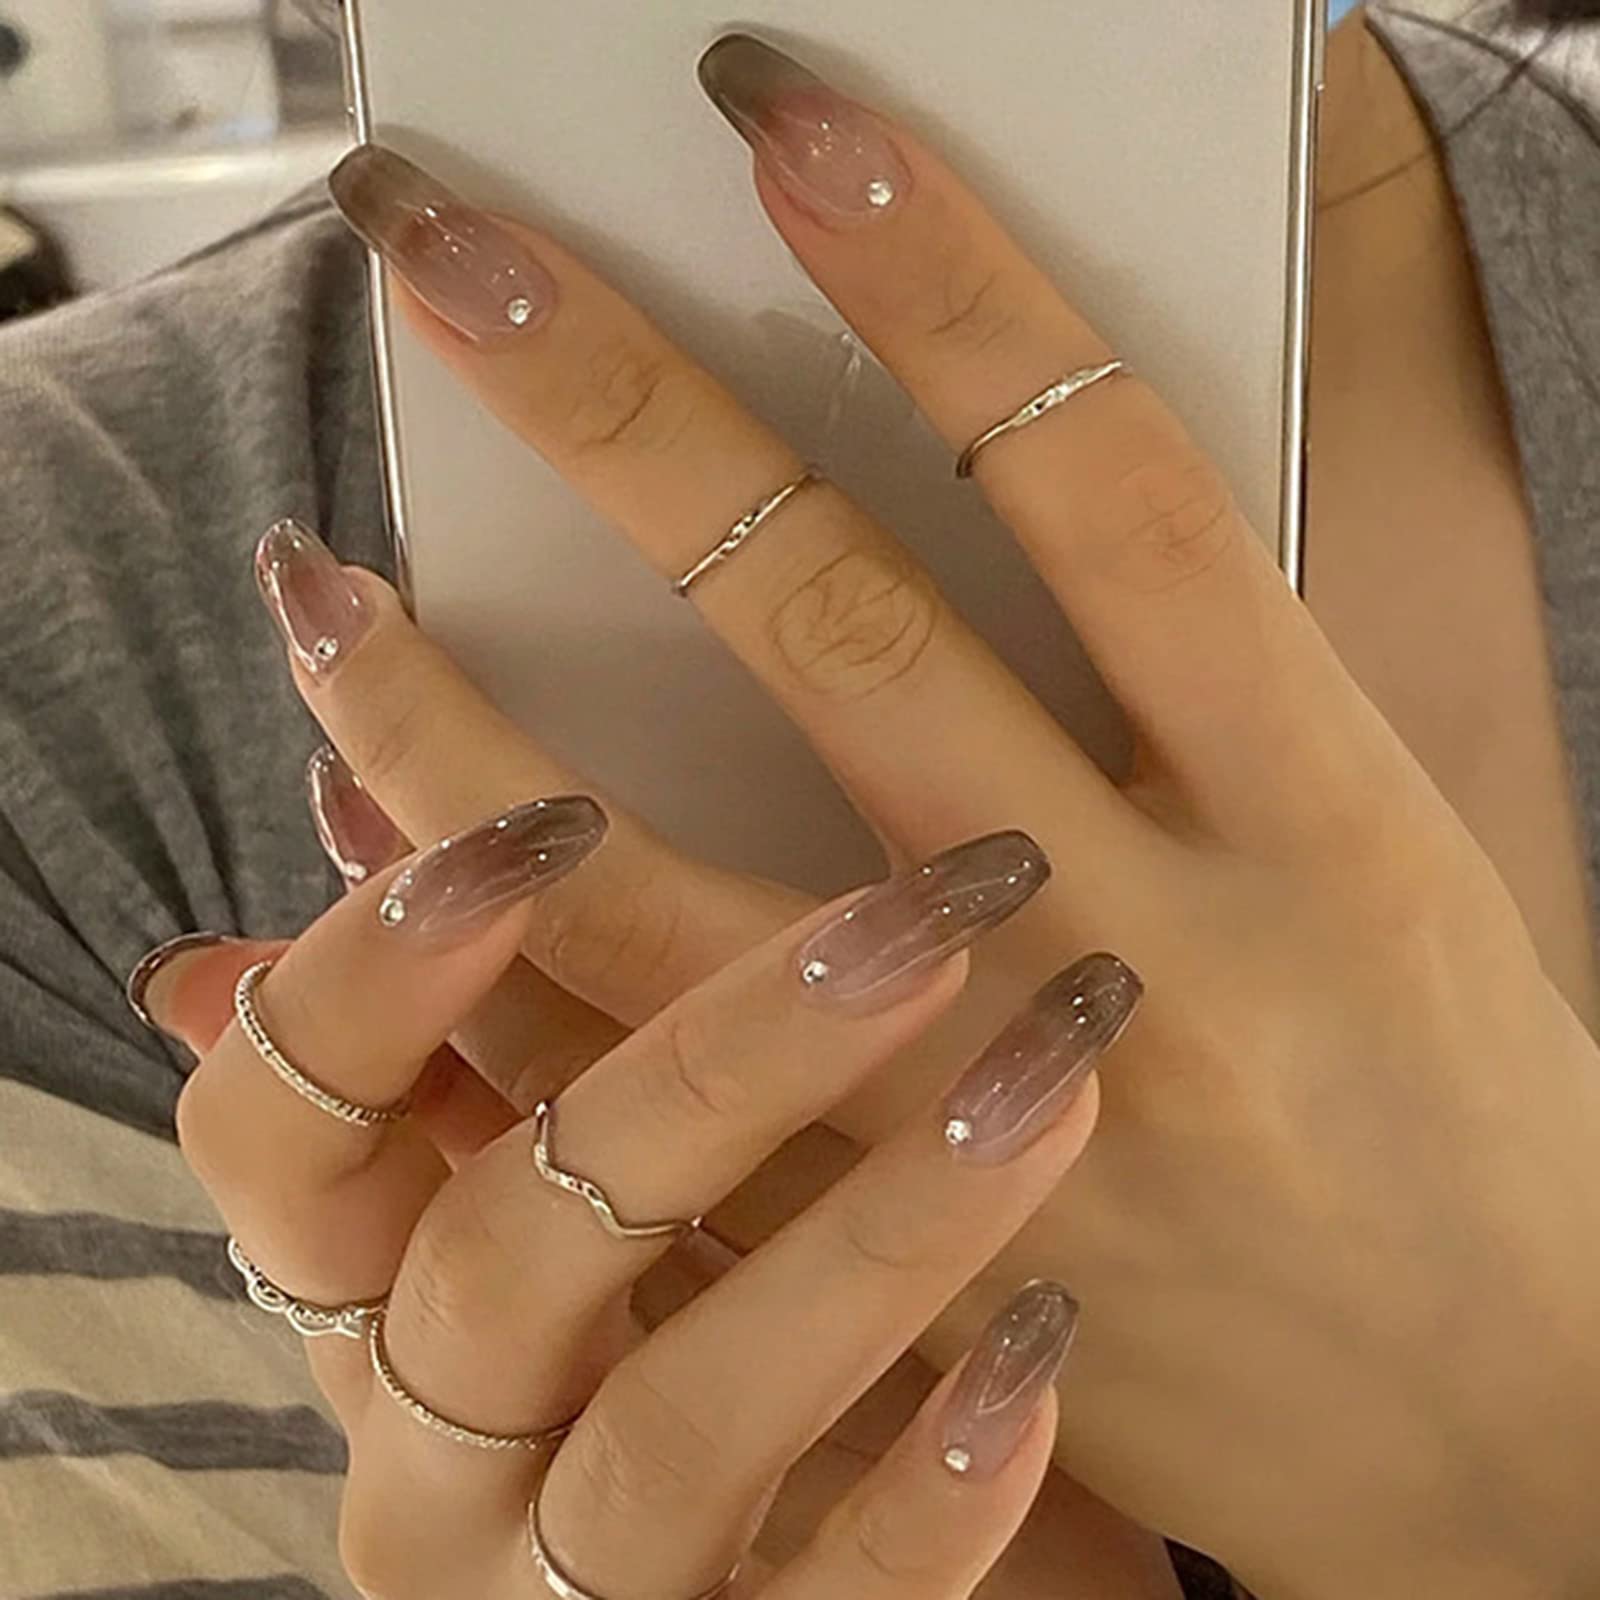 Shimmery ballerina nails 🩰 : r/RedditLaqueristas